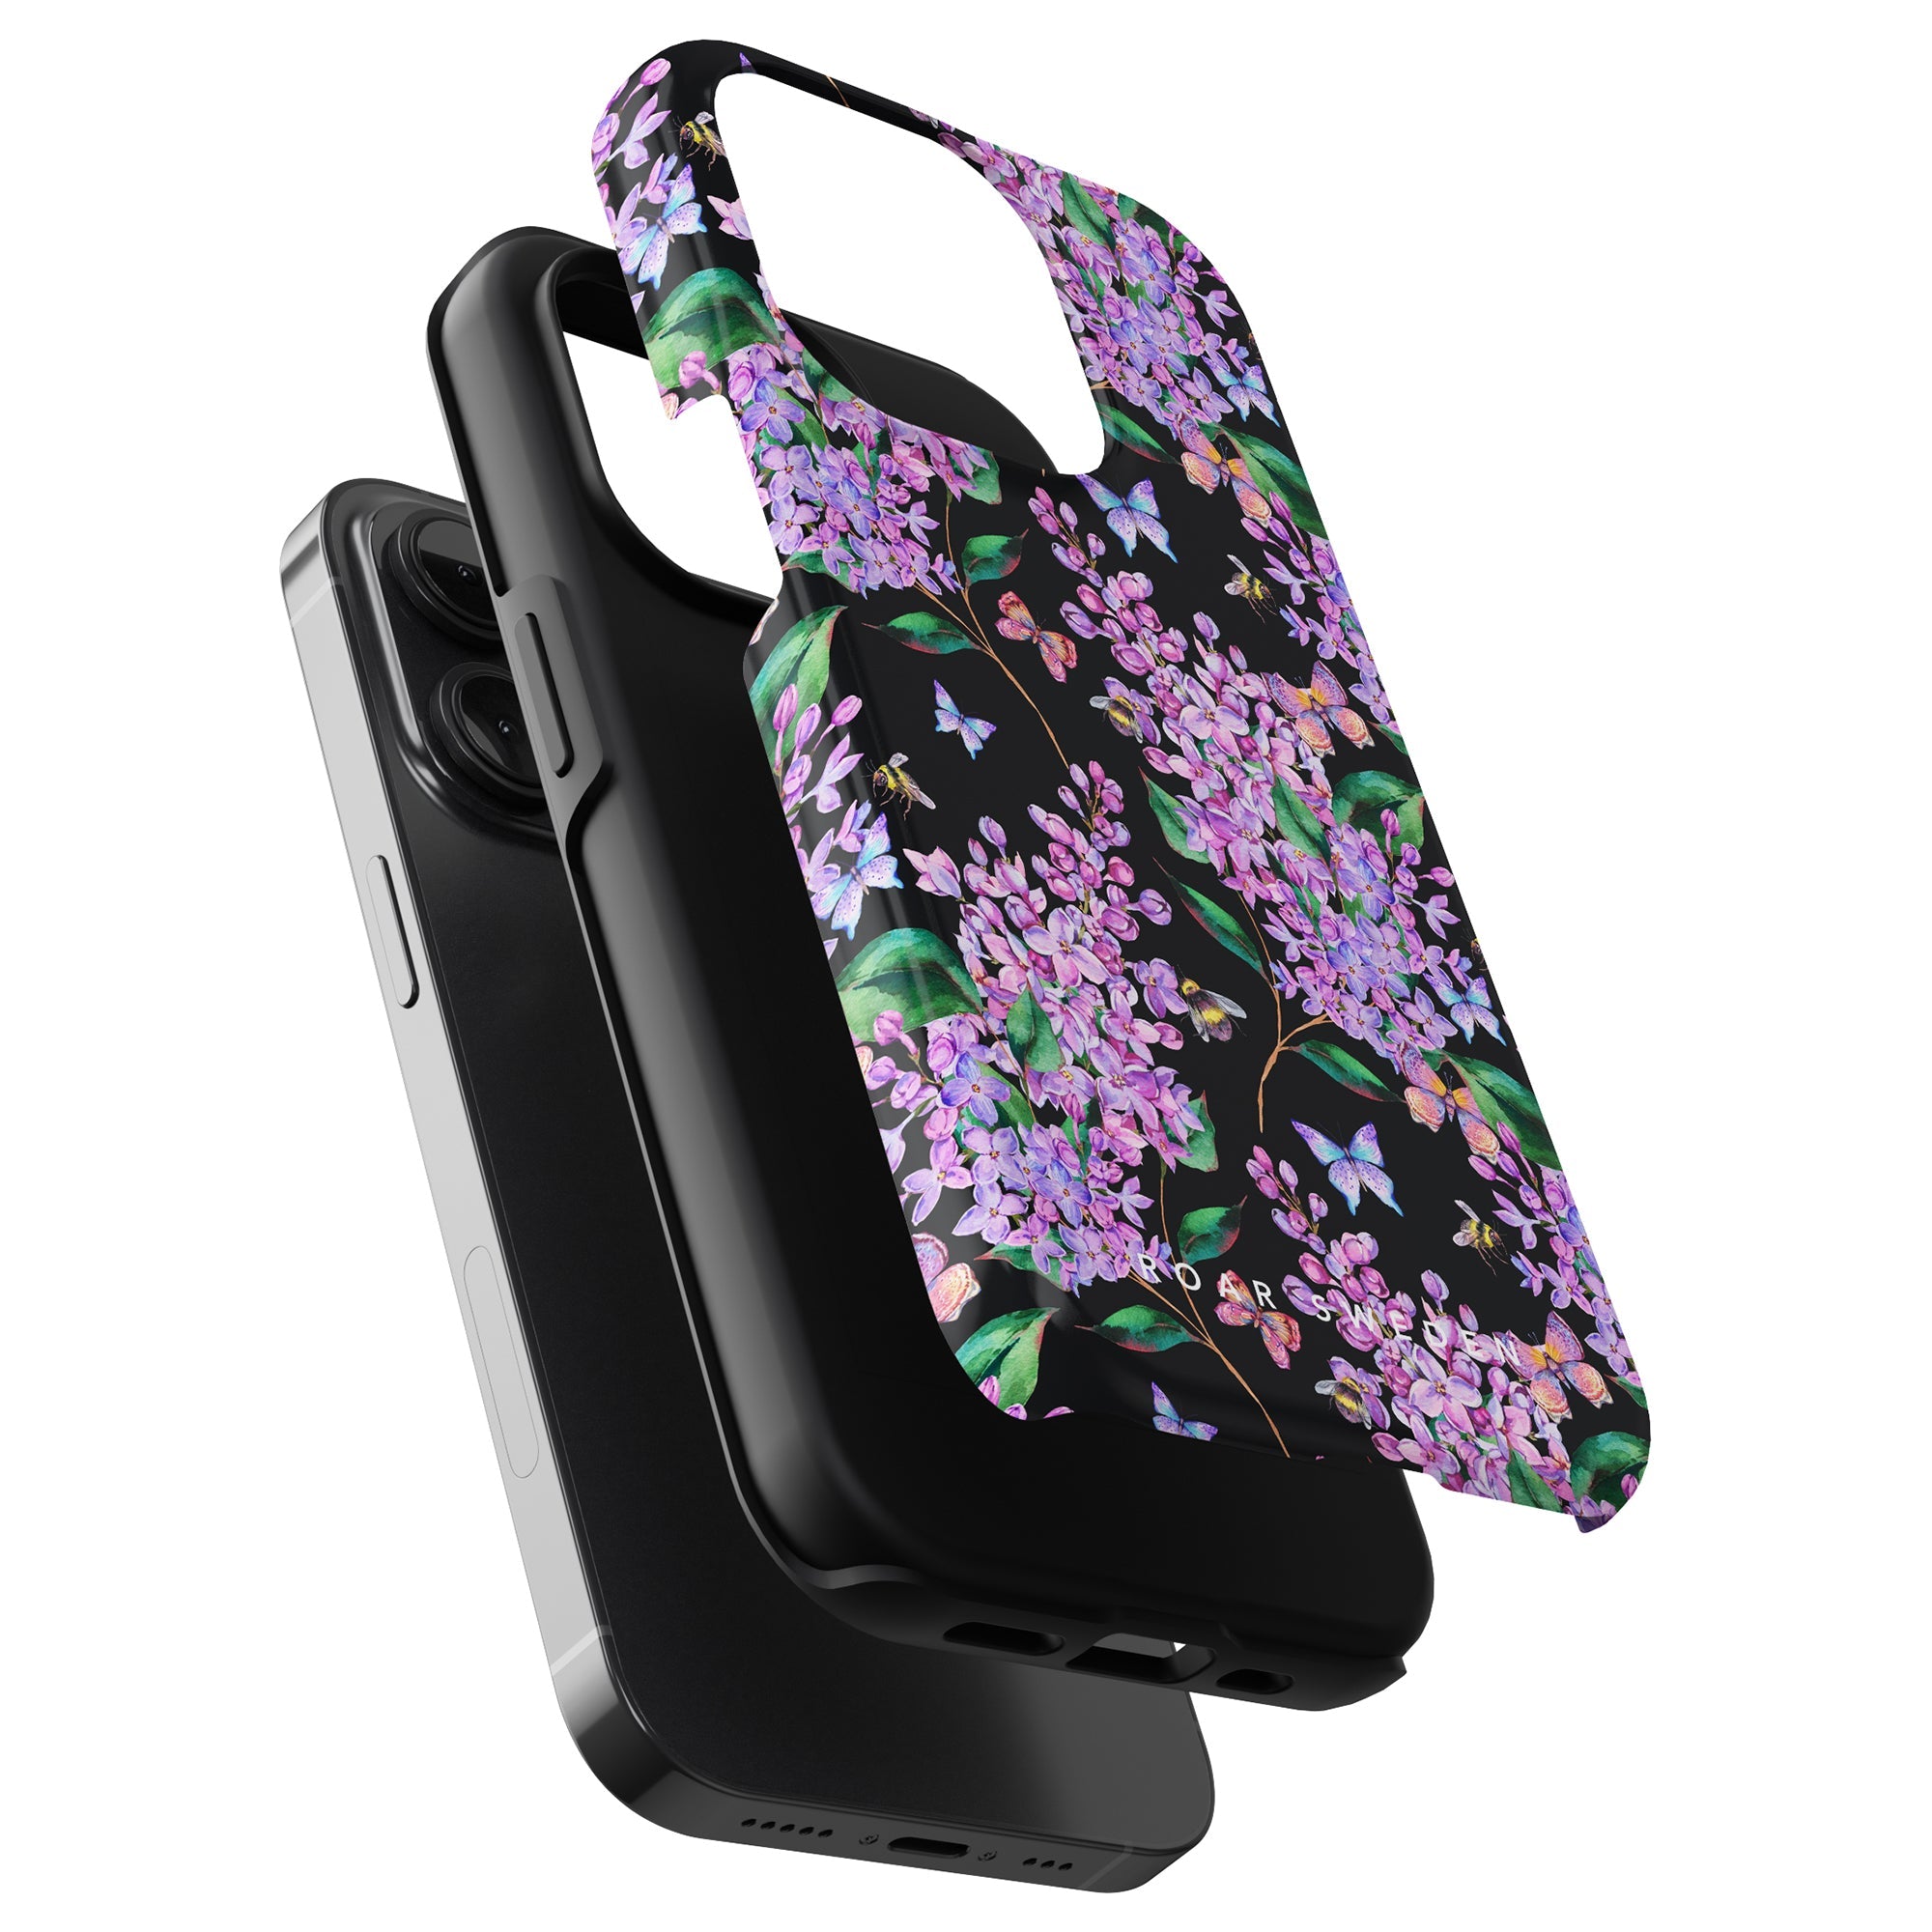 En lila mobilskal prydd med fjärilar, designad speciellt för iPhone 11 Pro.